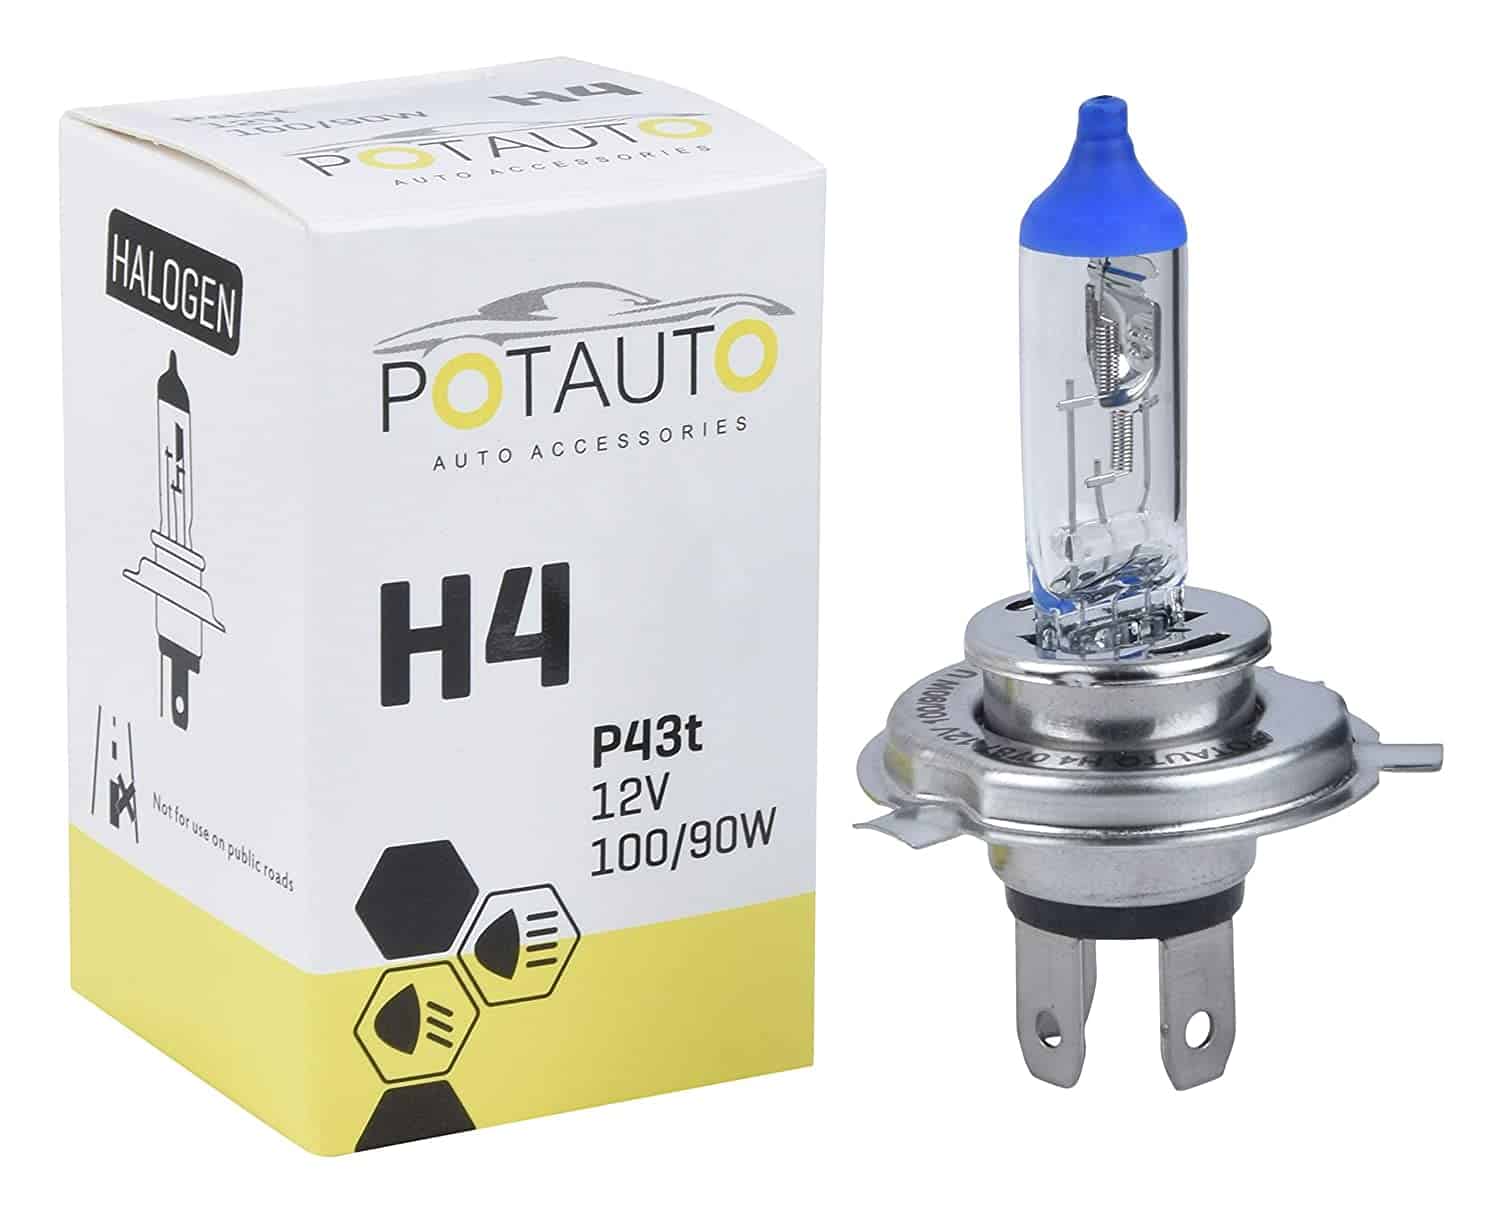 Potauto H4 Headlight Bulb P43t 12V 100/90W